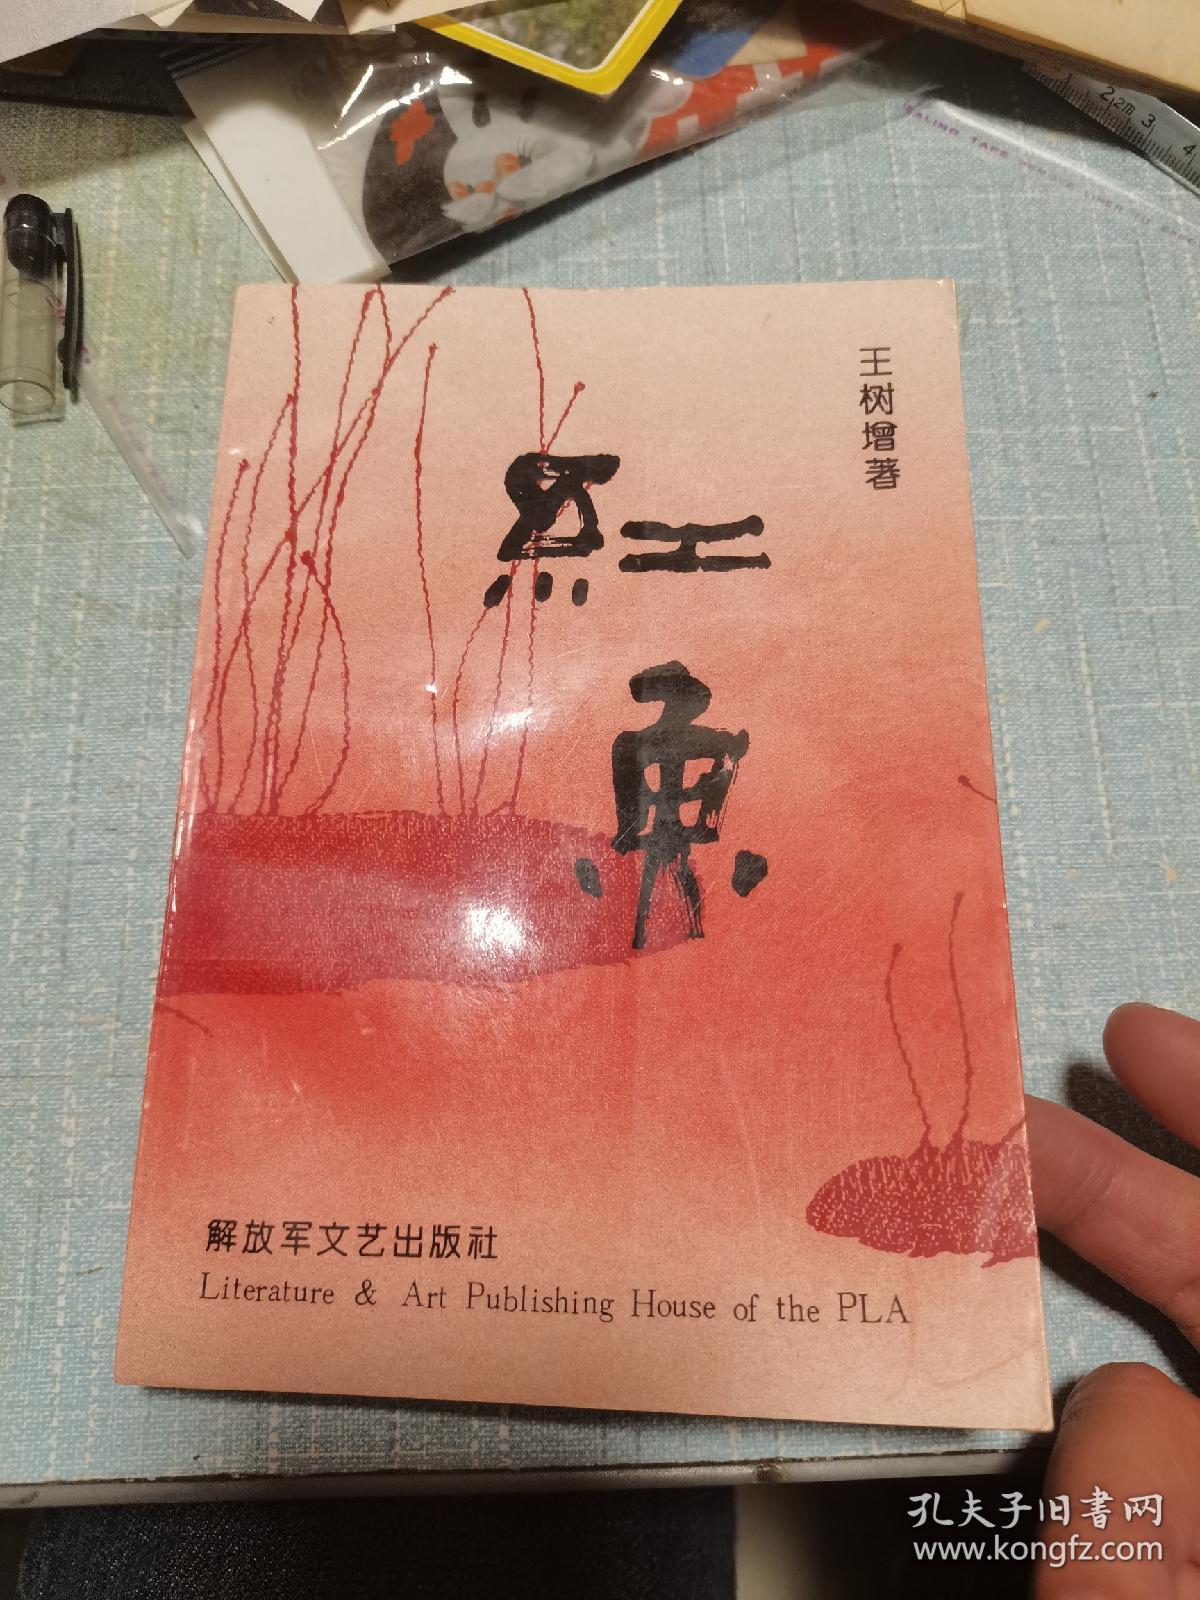 红鱼-王树增著描写我军空降兵部队生活的中篇小说集